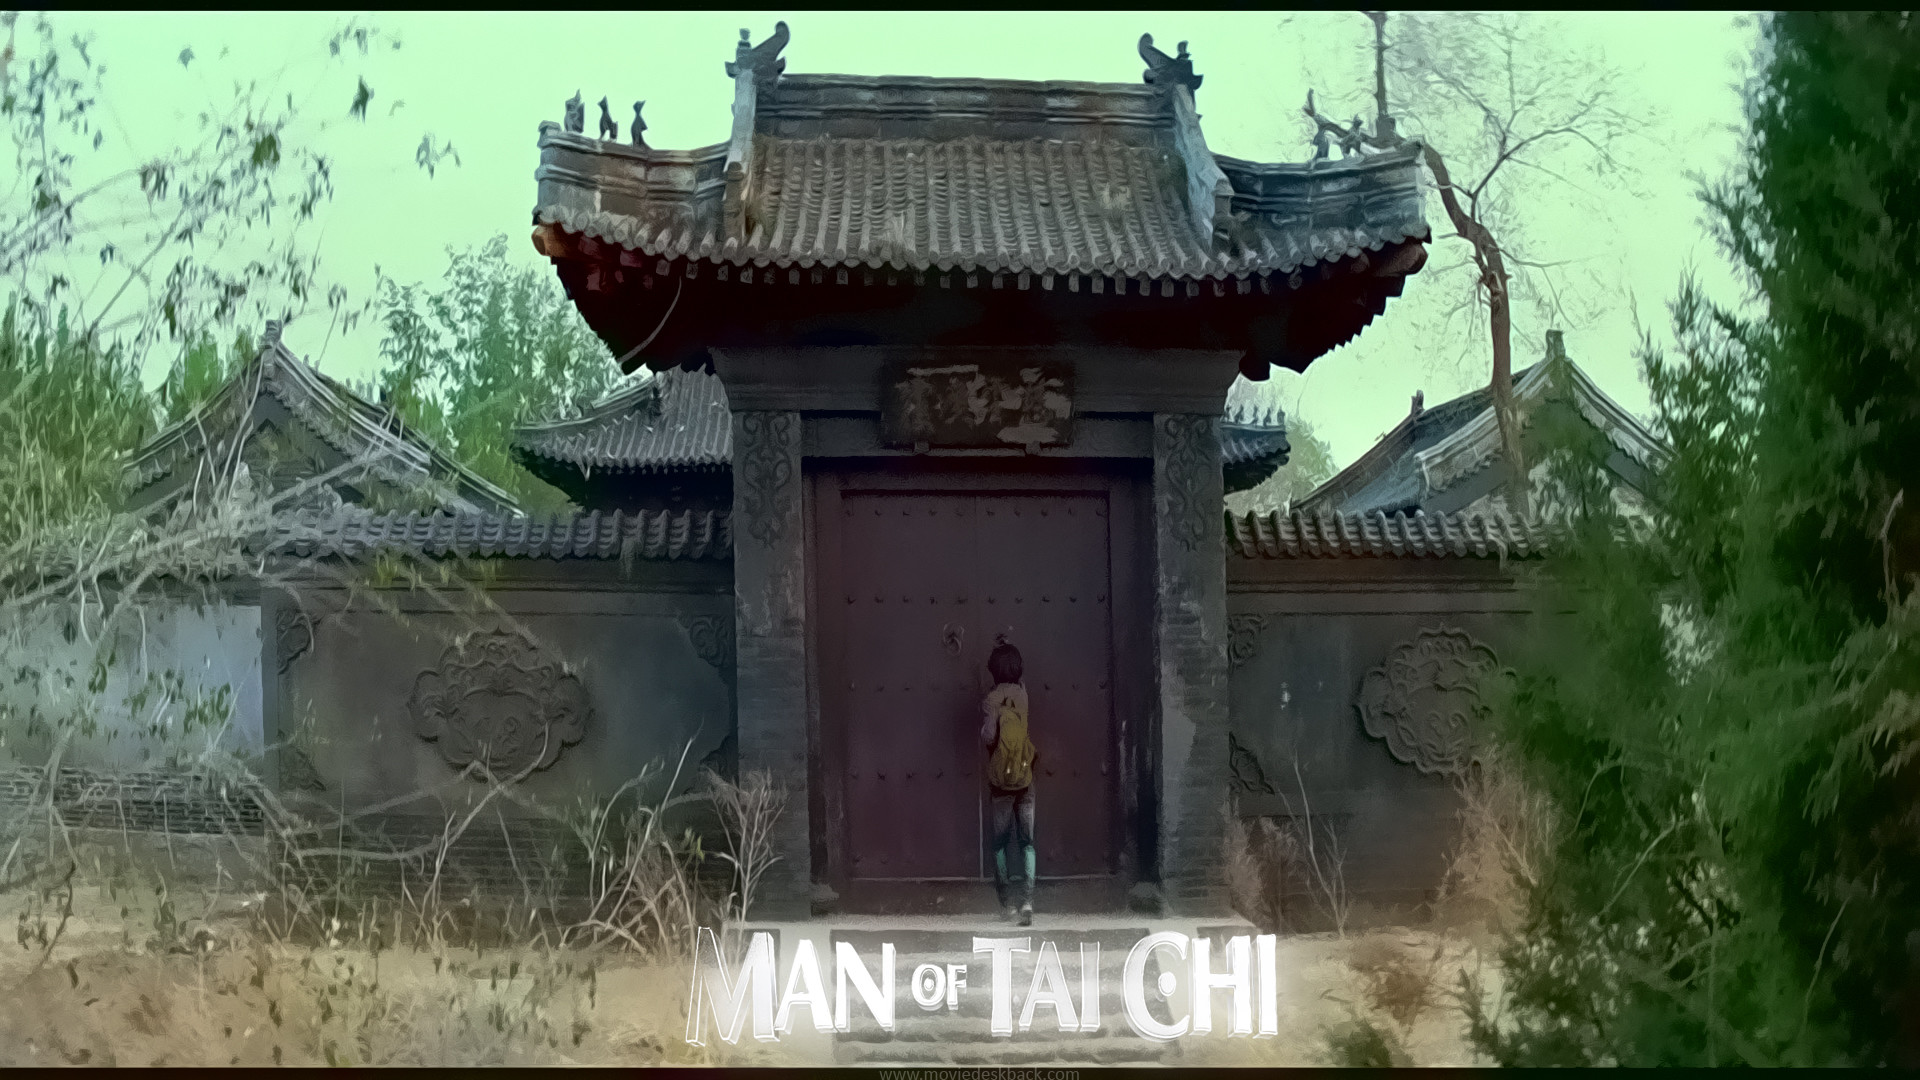 1920x1080 Man Of Tai Chi wallpap... Man Of Tai Chi Wallpaper